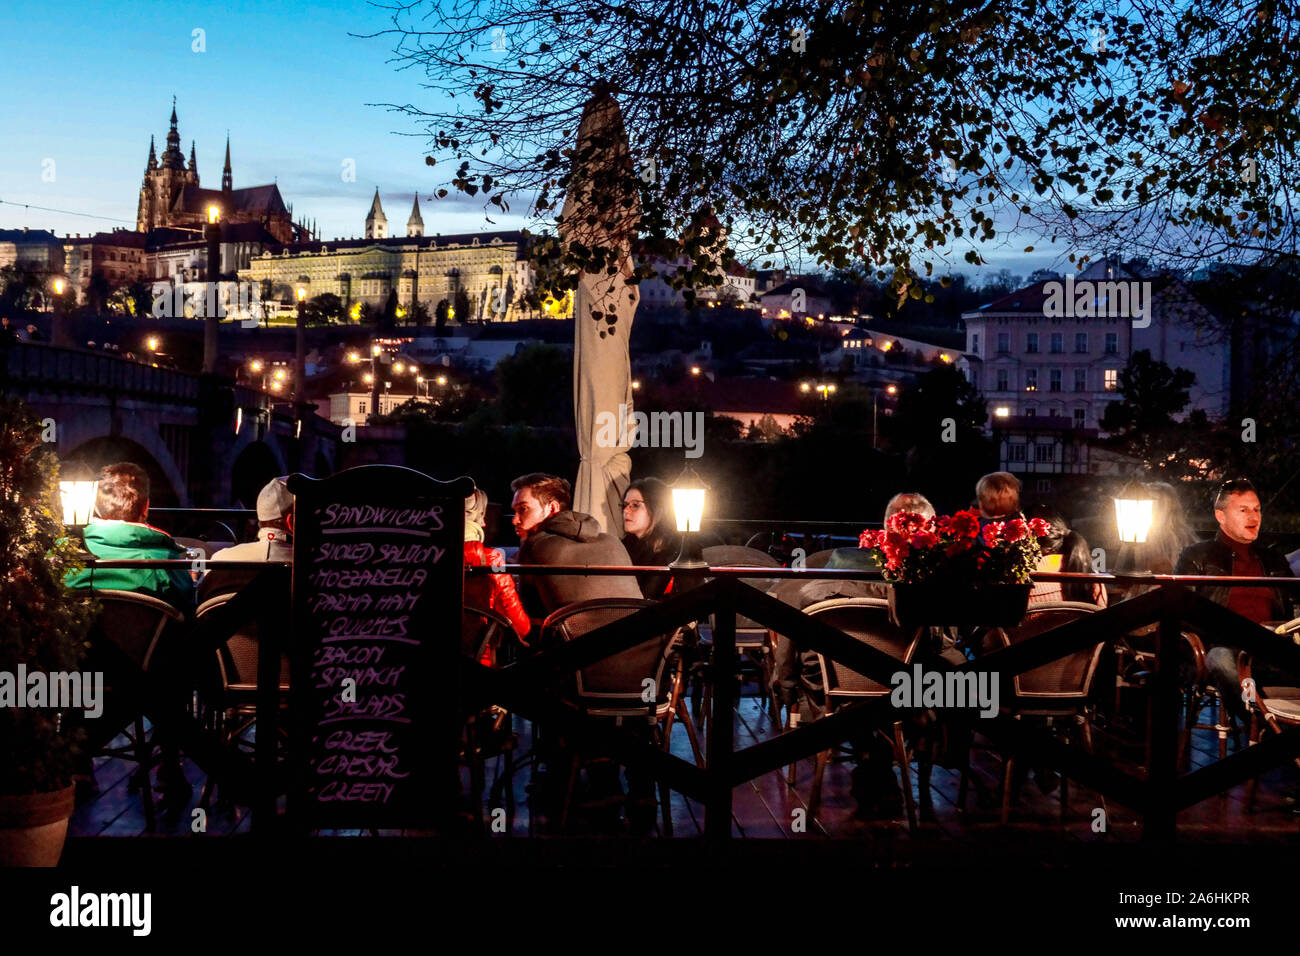 Prager Menschen in einer Bar am Fluss Moldau, Restaurant, Touristen mit Blick auf die Prager Burg Nacht Prager Burg Blick Abendatmosphäre Stockfoto